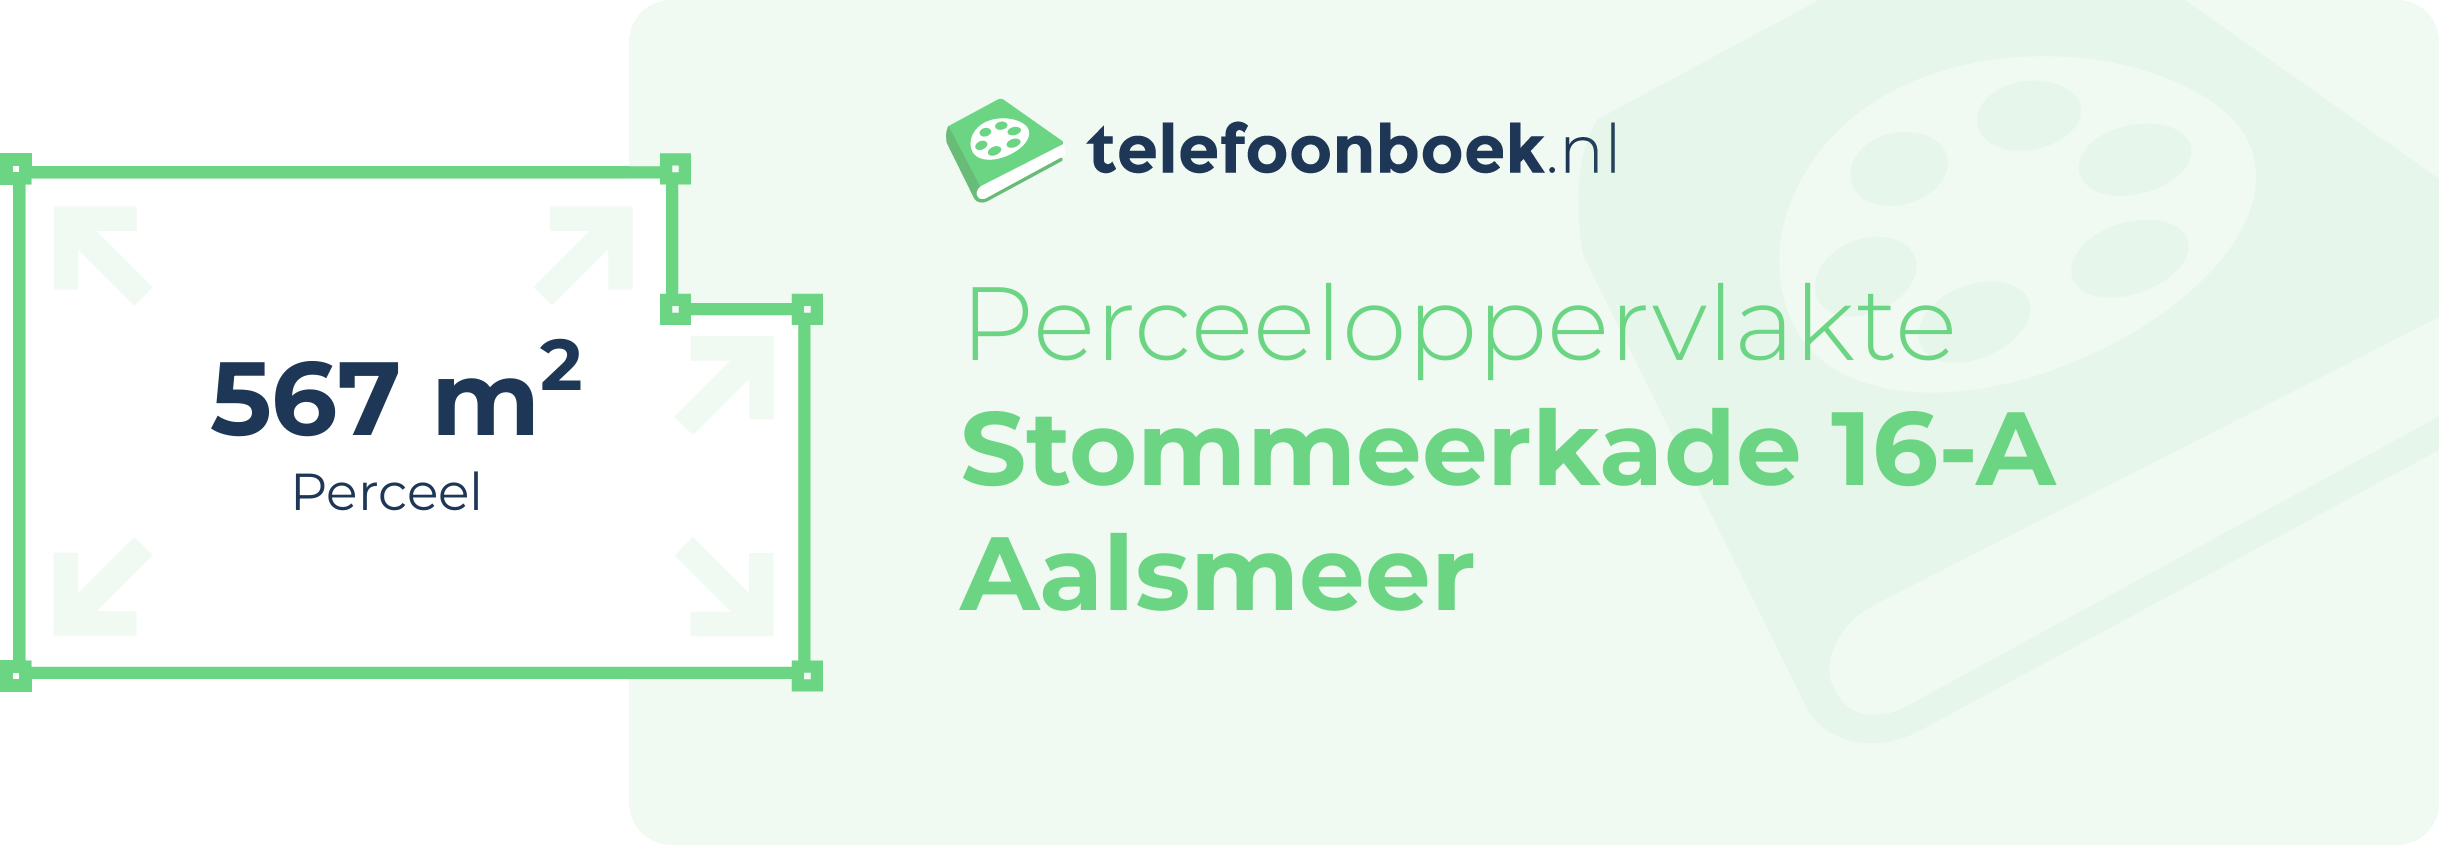 Perceeloppervlakte Stommeerkade 16-A Aalsmeer